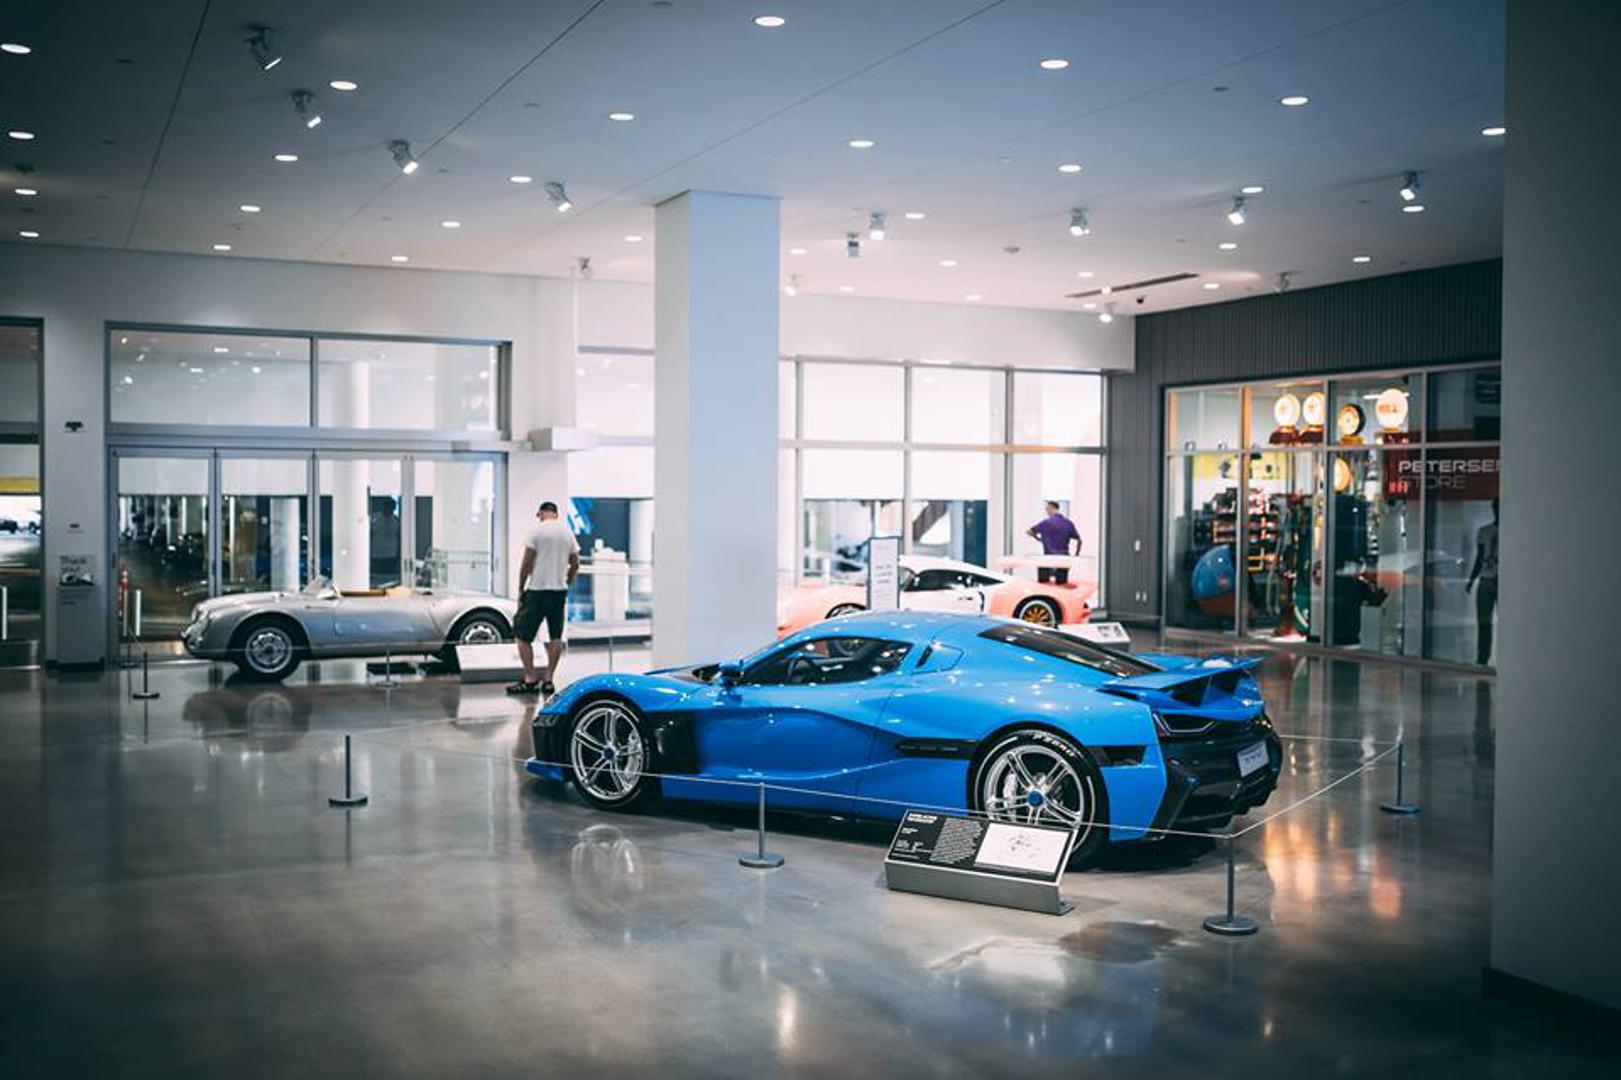 Muzej Petersen Automotive jedan je od najvećih muzeja koji ima najbolje svjetske kolekcije automobila